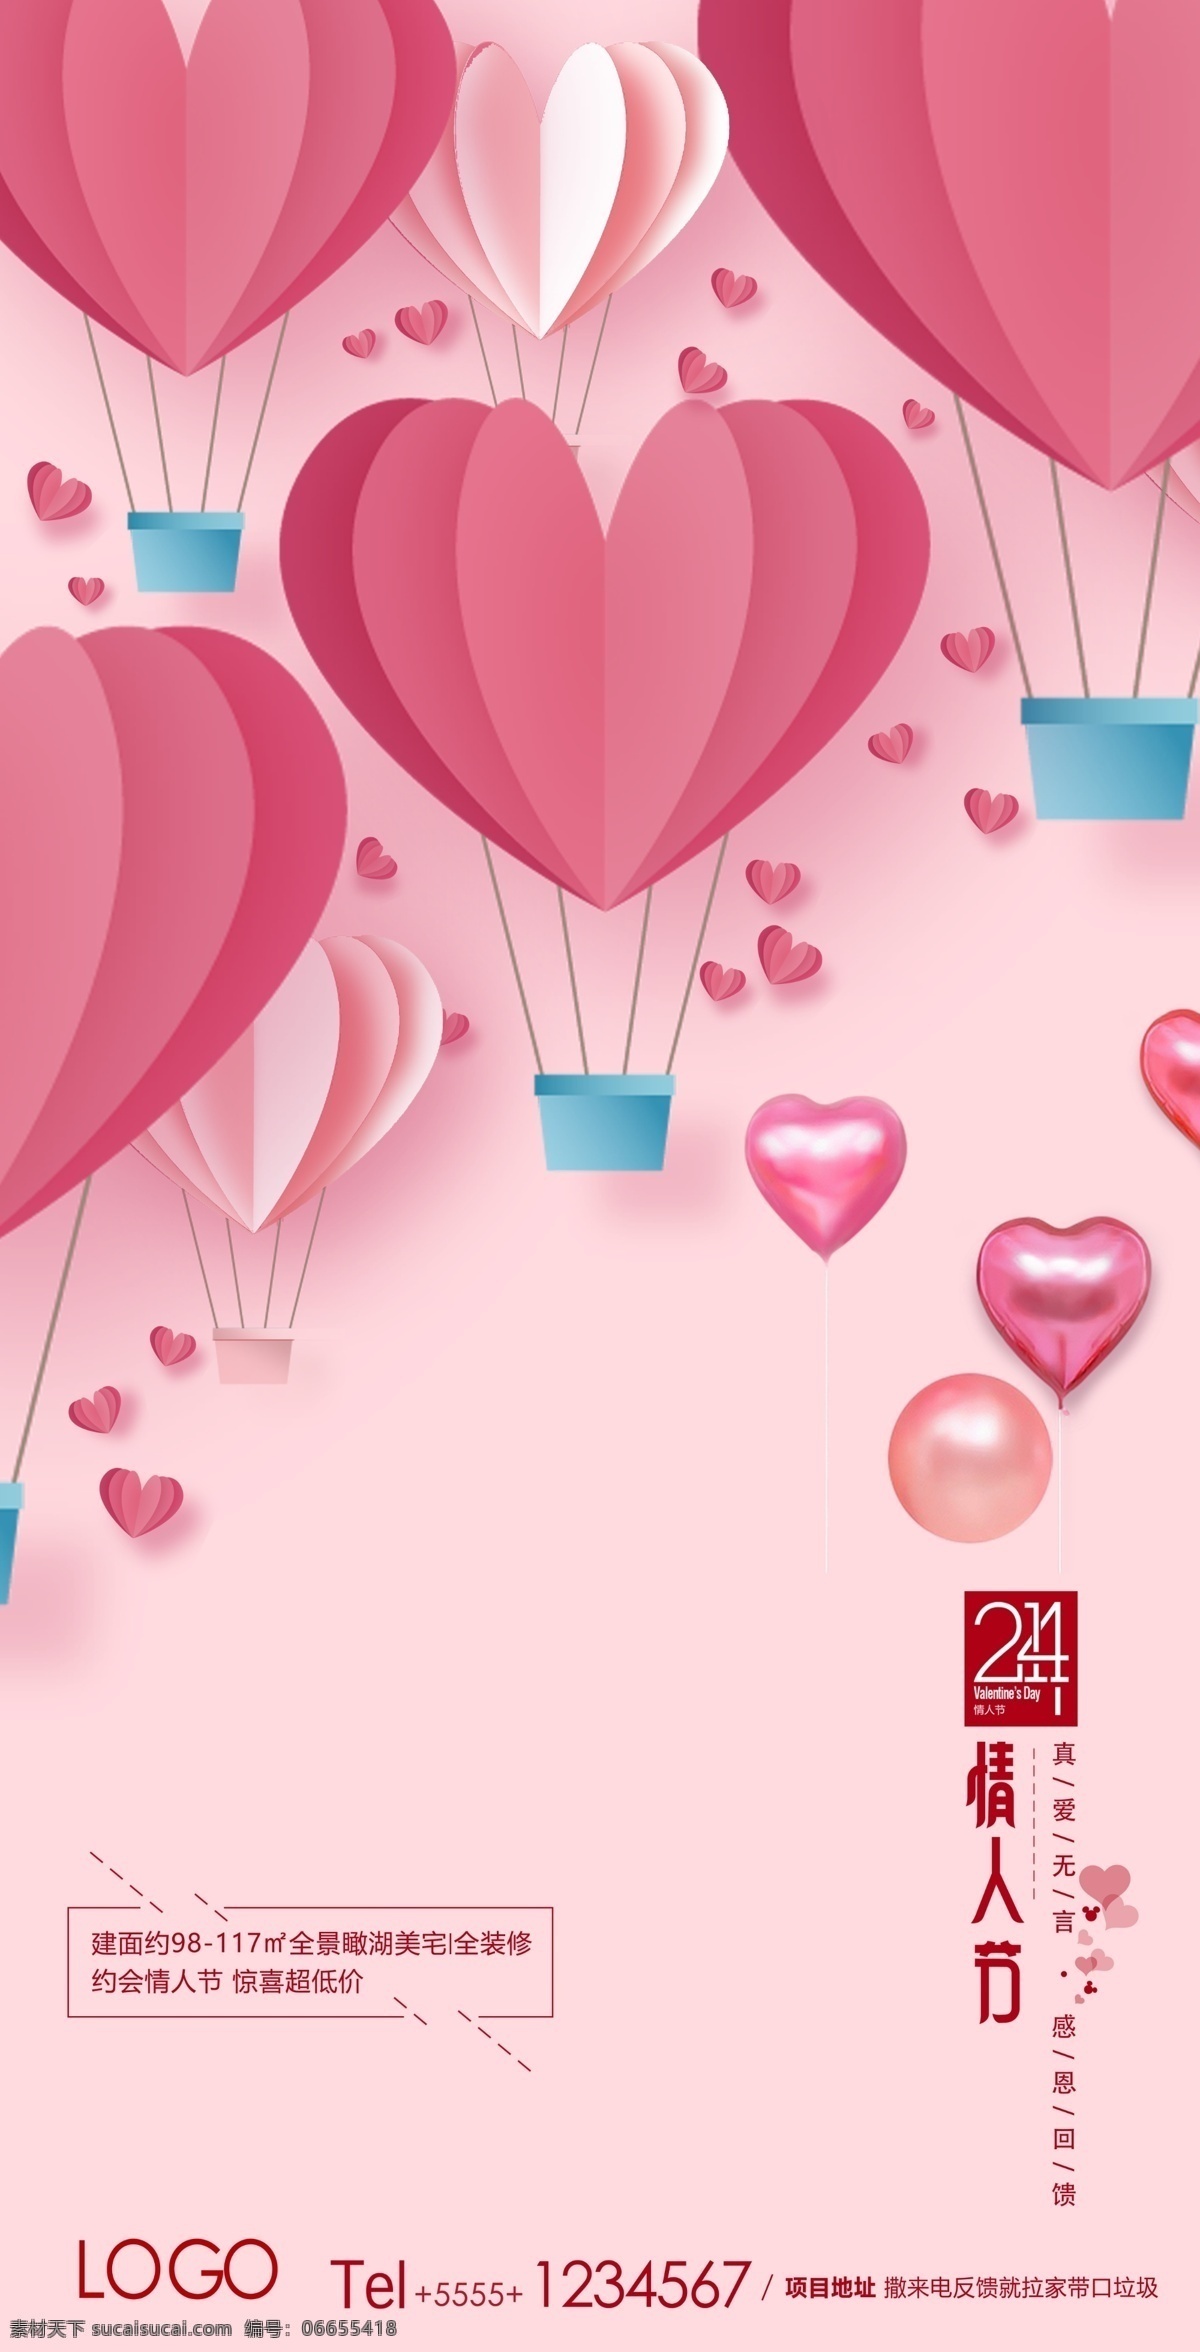 情人节海报 情人节 白色情人节 粉色背景 心形气球 折纸感心形 二月十四 粉红色背景 热气球 地产类